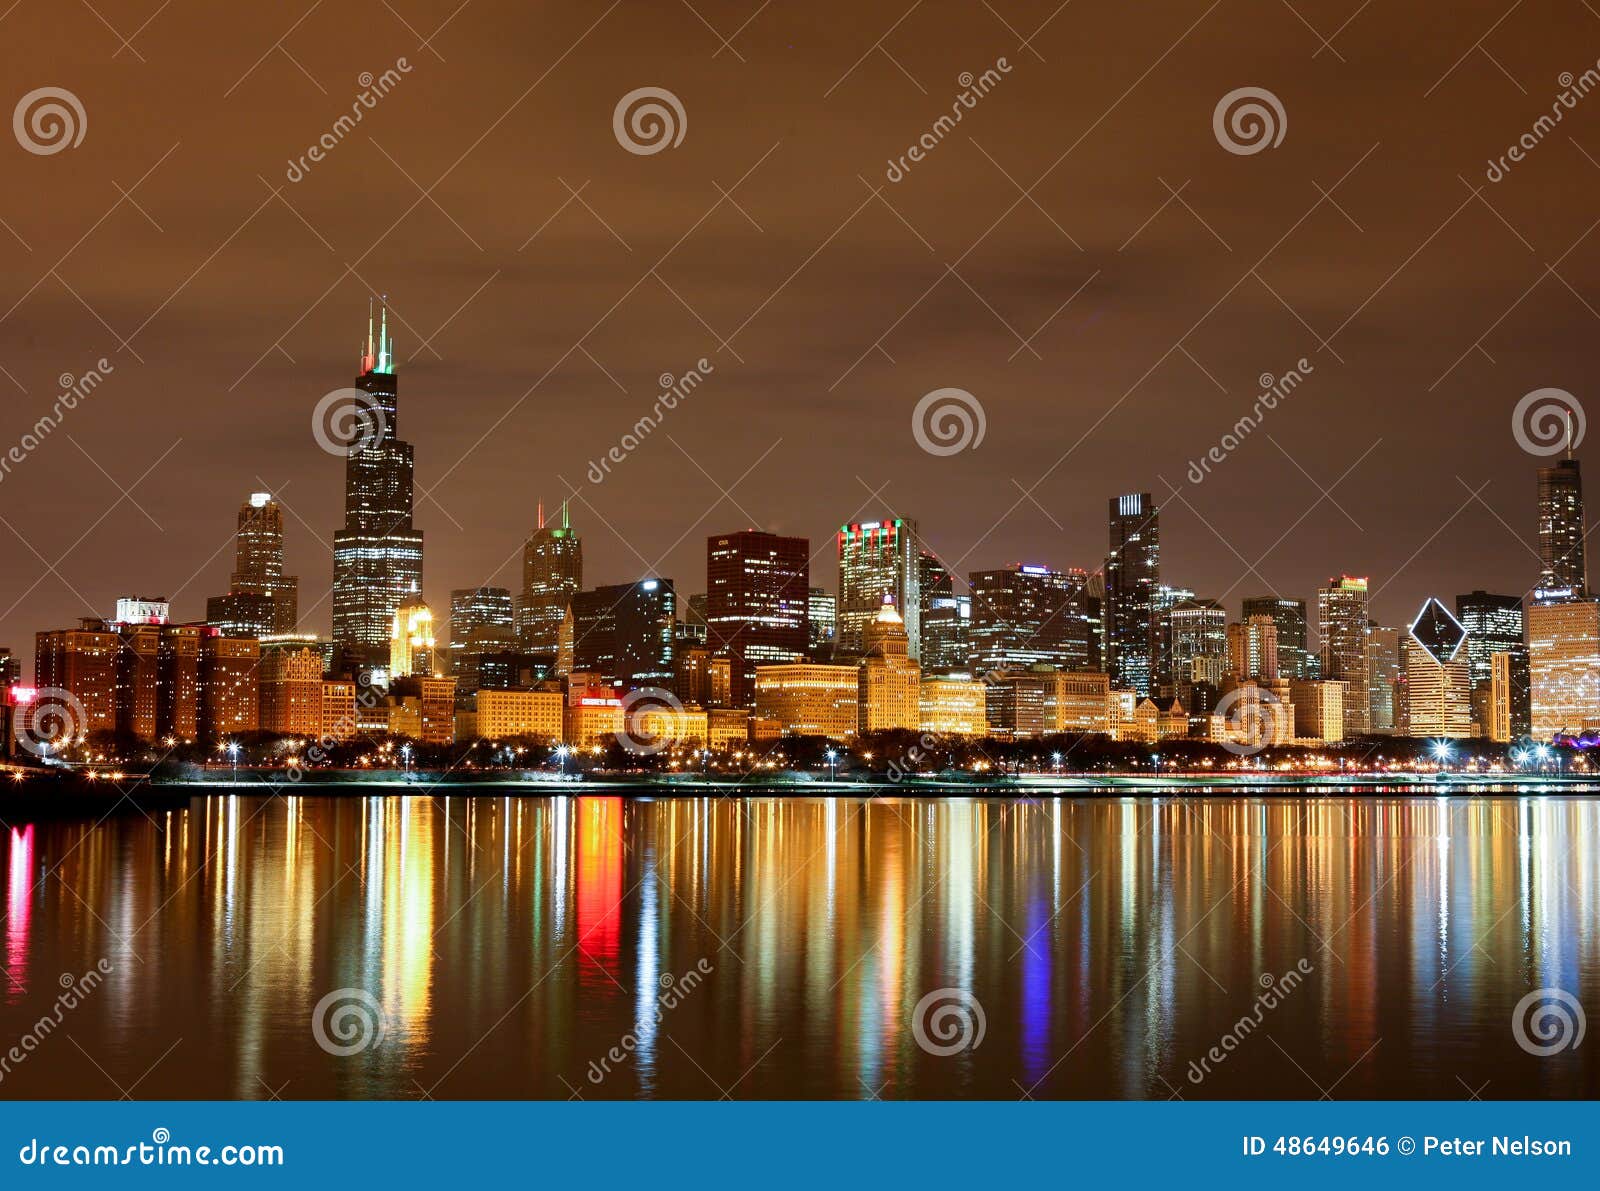 Proximidades do lago de Chicago na noite II. A exposição longa disparou de Chicago do centro do planetário de Adler